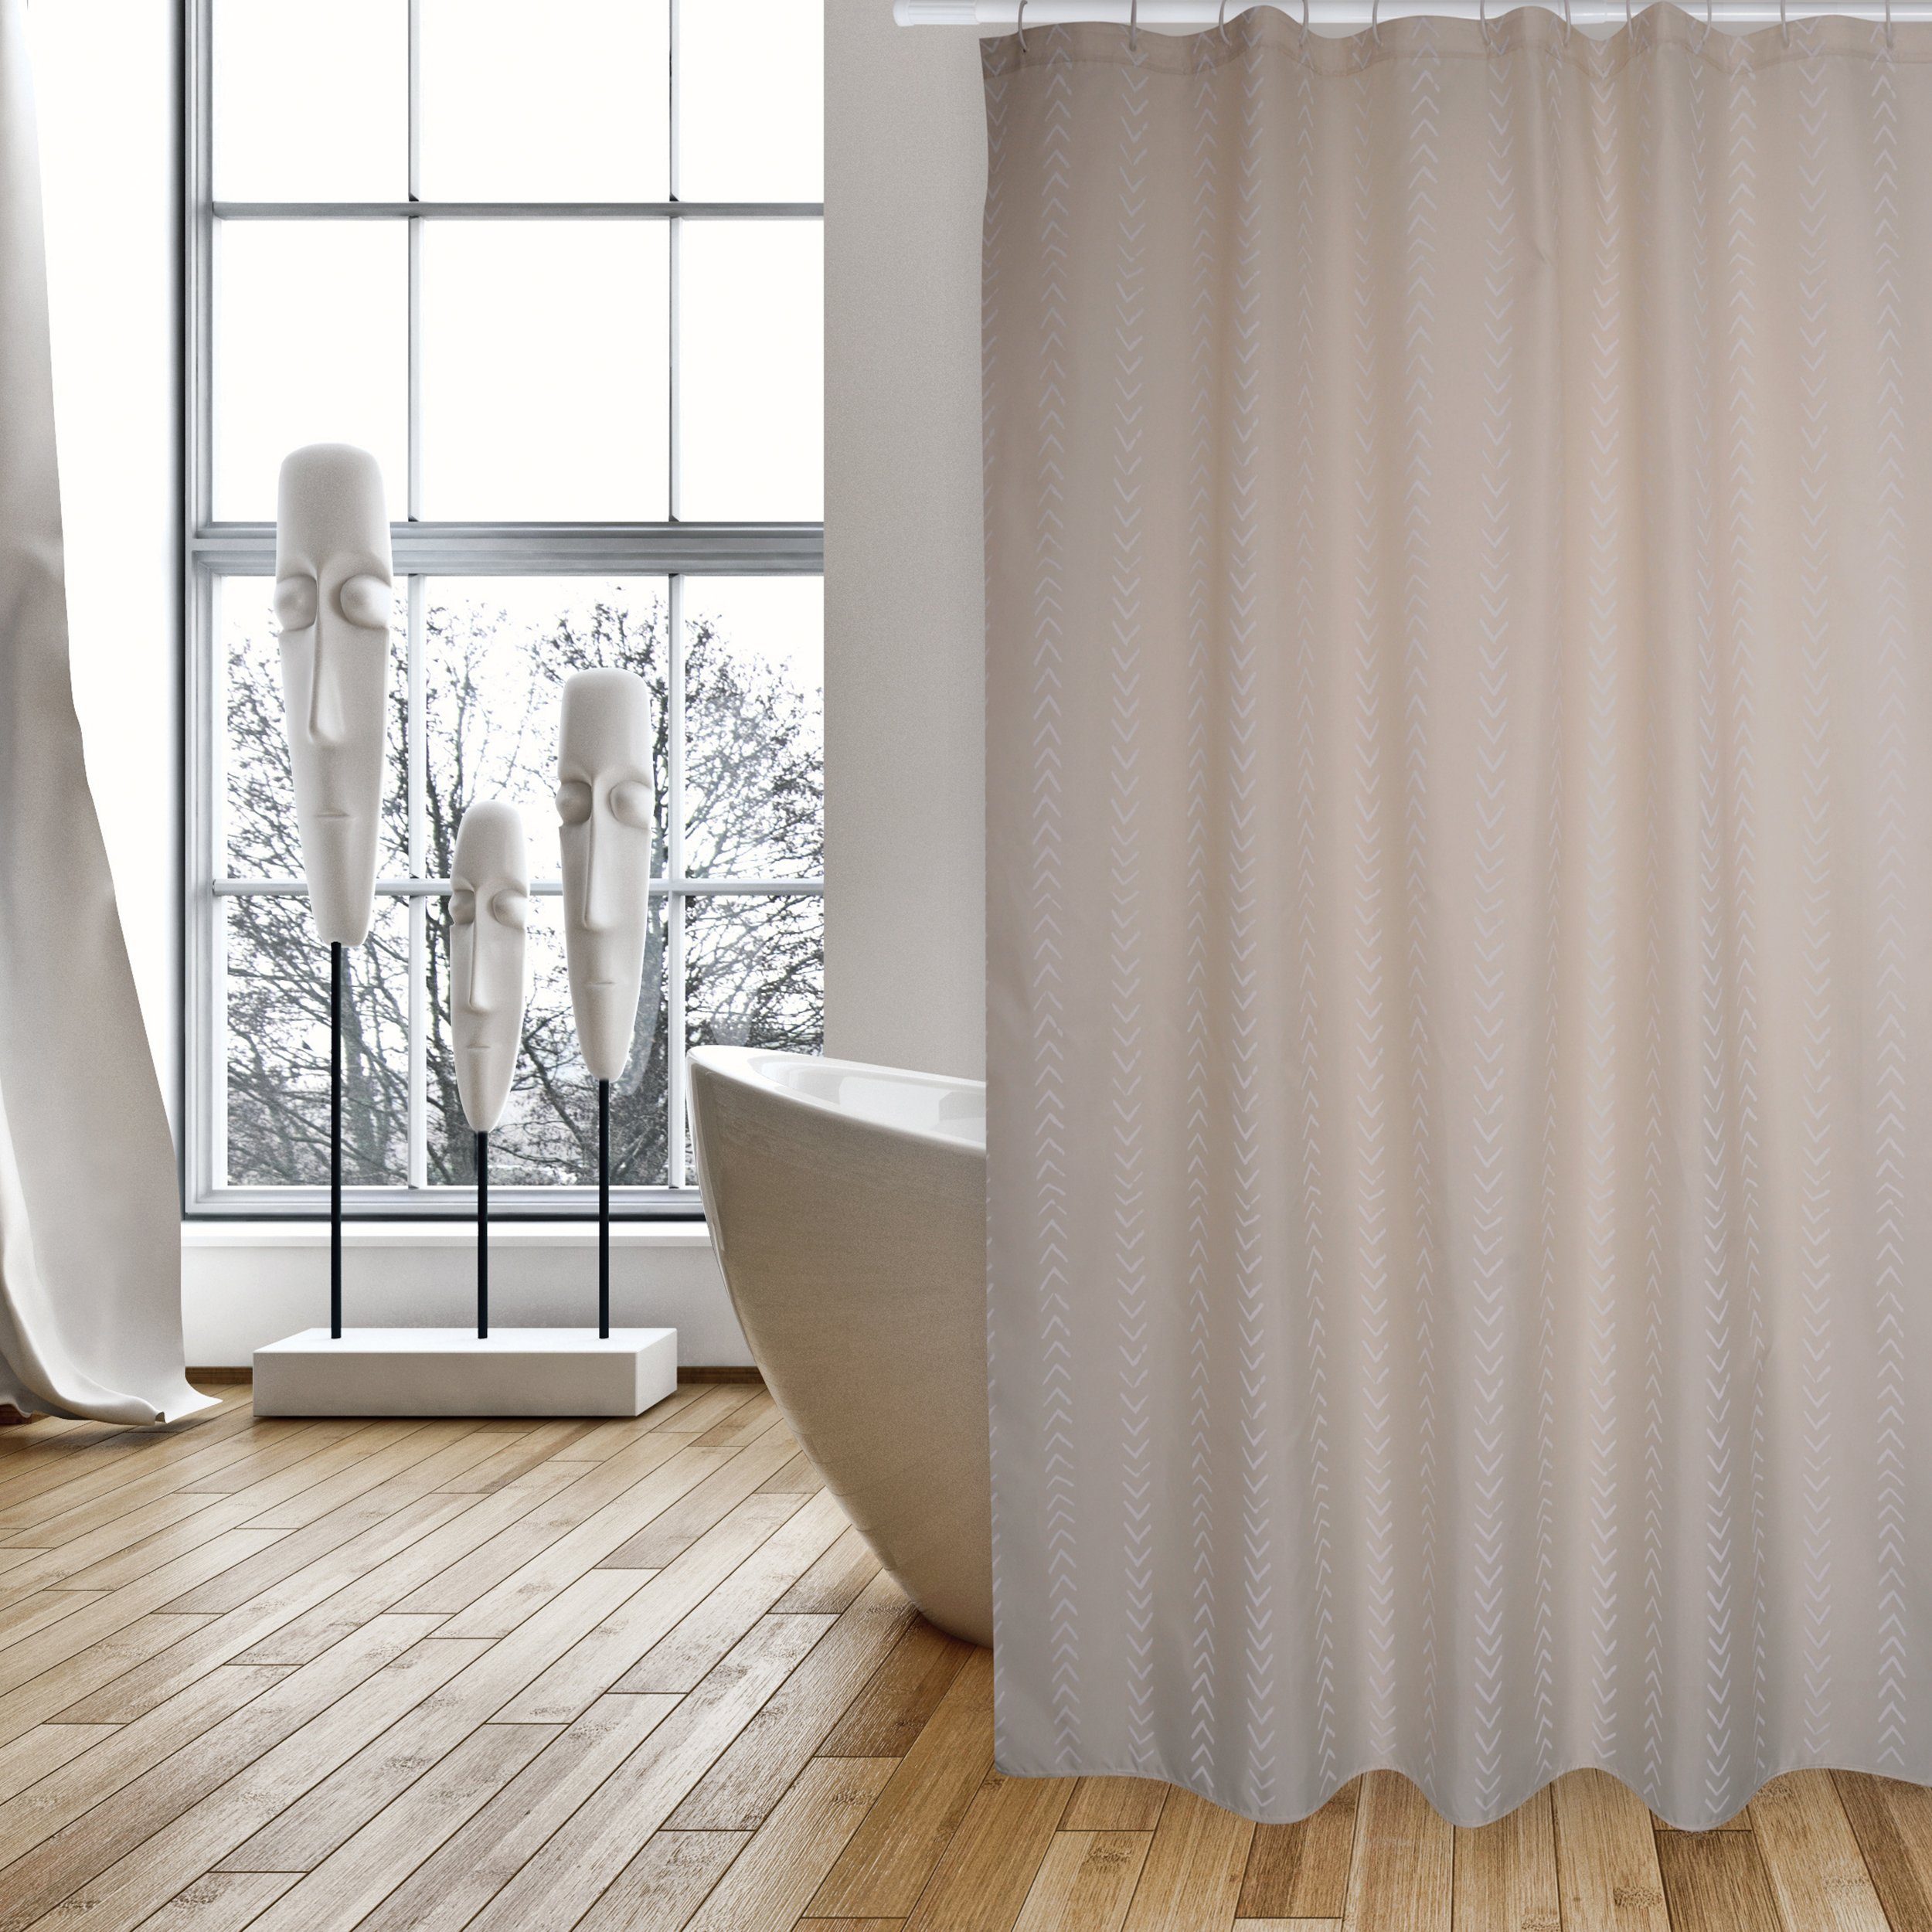 MSV Duschvorhang »BERBERA« Breite 180 cm, Premium Anti-Schimmel Textil- Duschvorhang, Polyester, 180x200 cm, waschbar, beige-braun, gemustert  online kaufen | OTTO